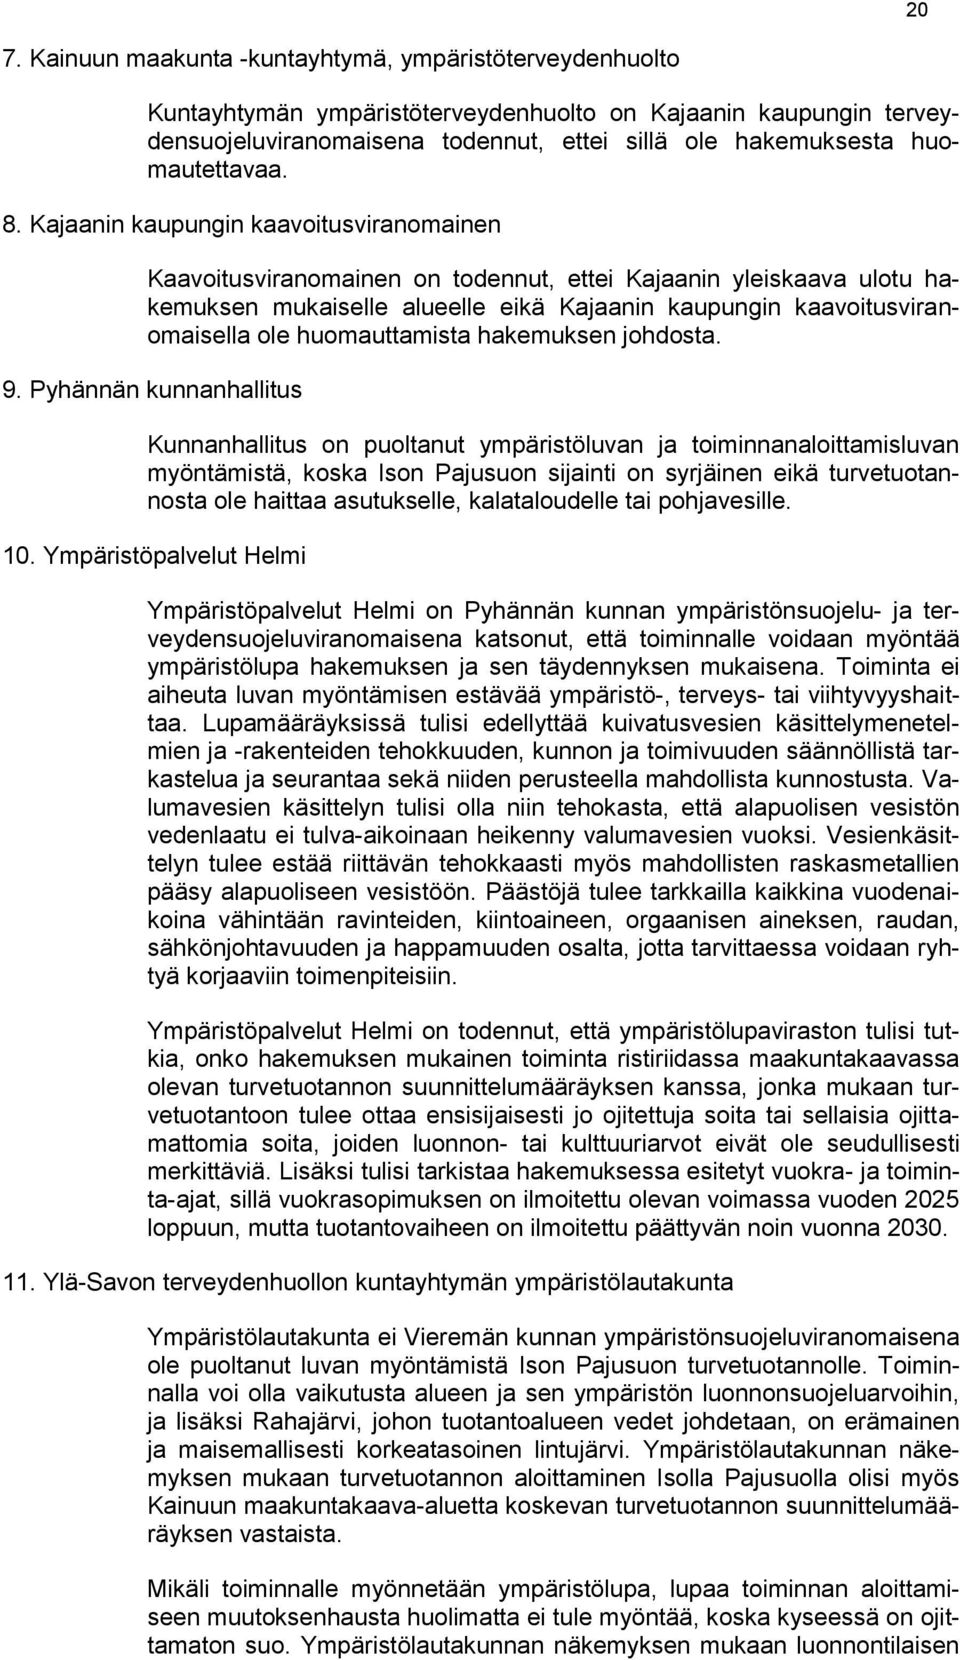 Kajaanin kaupungin kaavoitusviranomainen Kaavoitusviranomainen on todennut, ettei Kajaanin yleiskaava ulotu hakemuksen mukaiselle alueelle eikä Kajaanin kaupungin kaavoitusviranomaisella ole